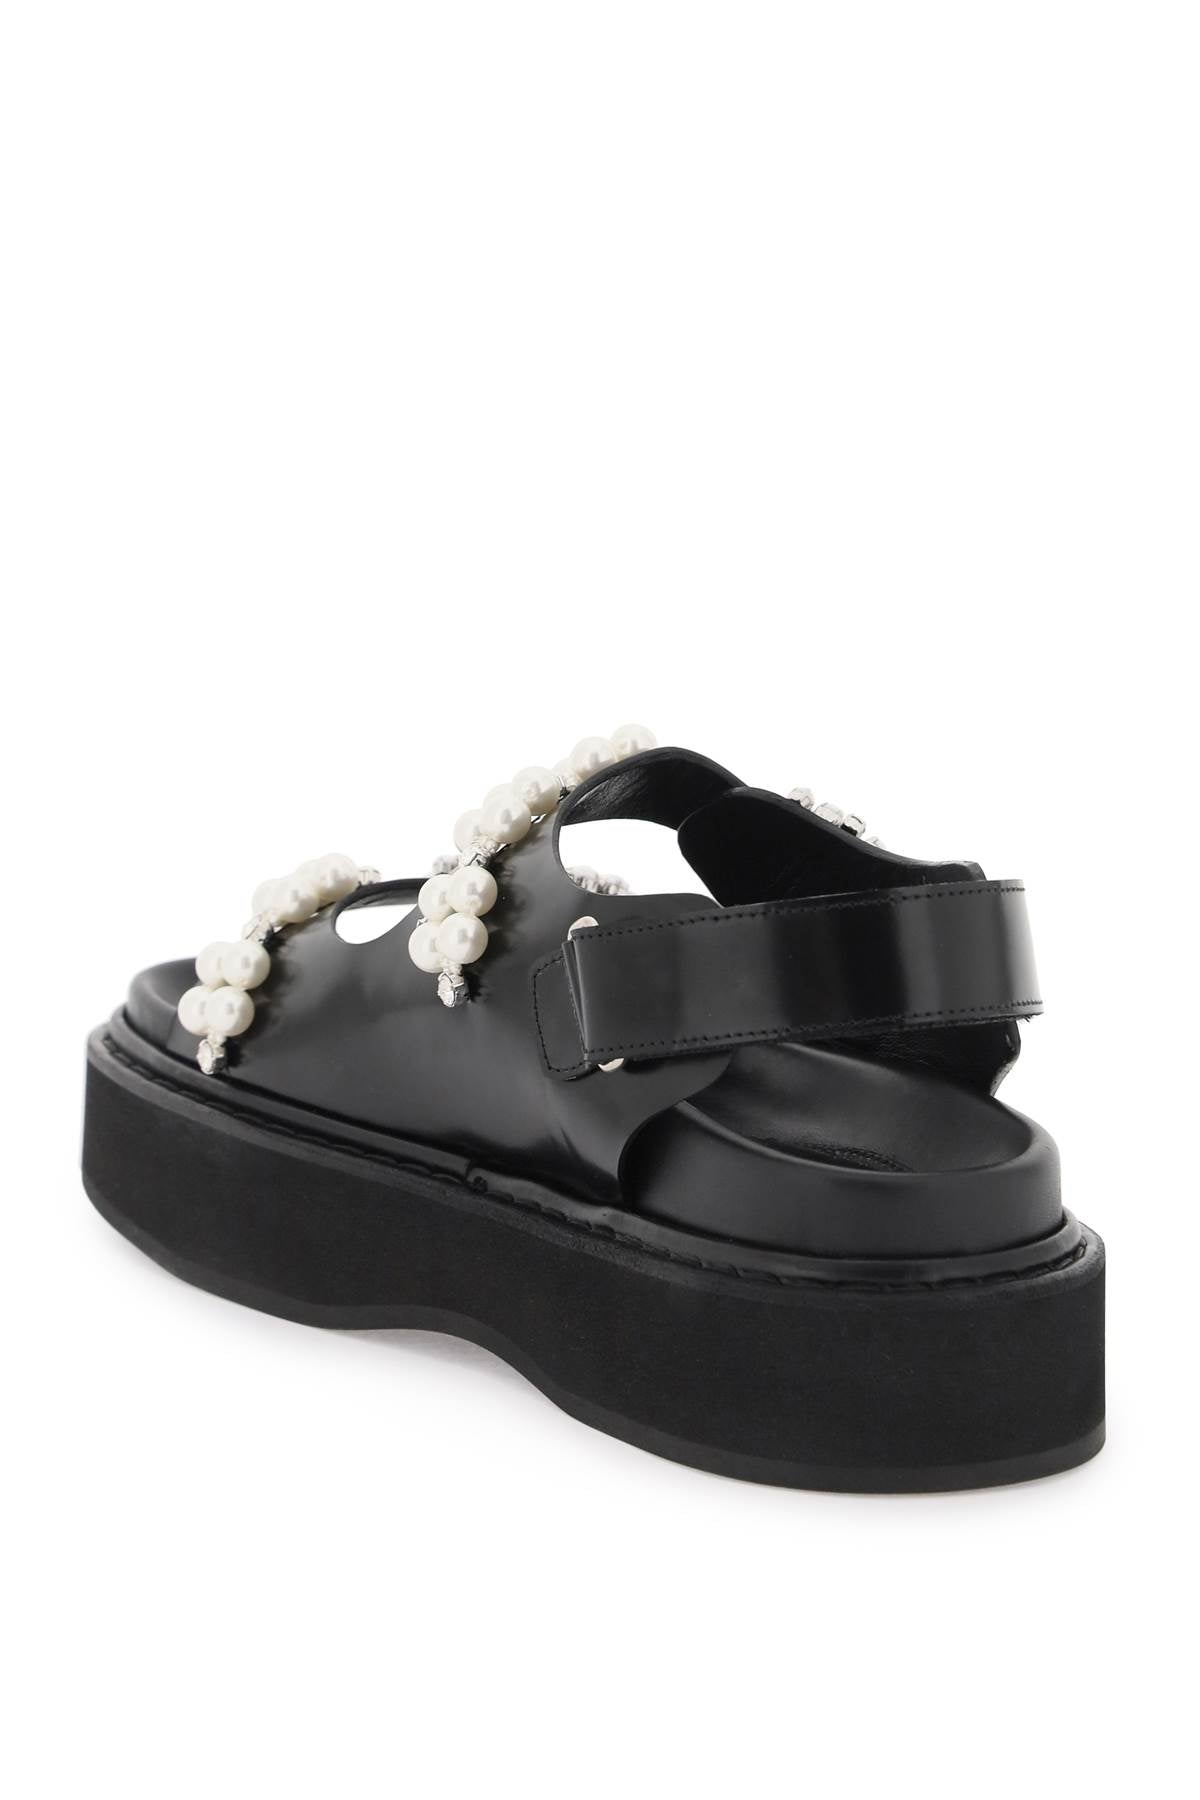 SIMONE ROCHA Studded Platform Sandals for Women in Black